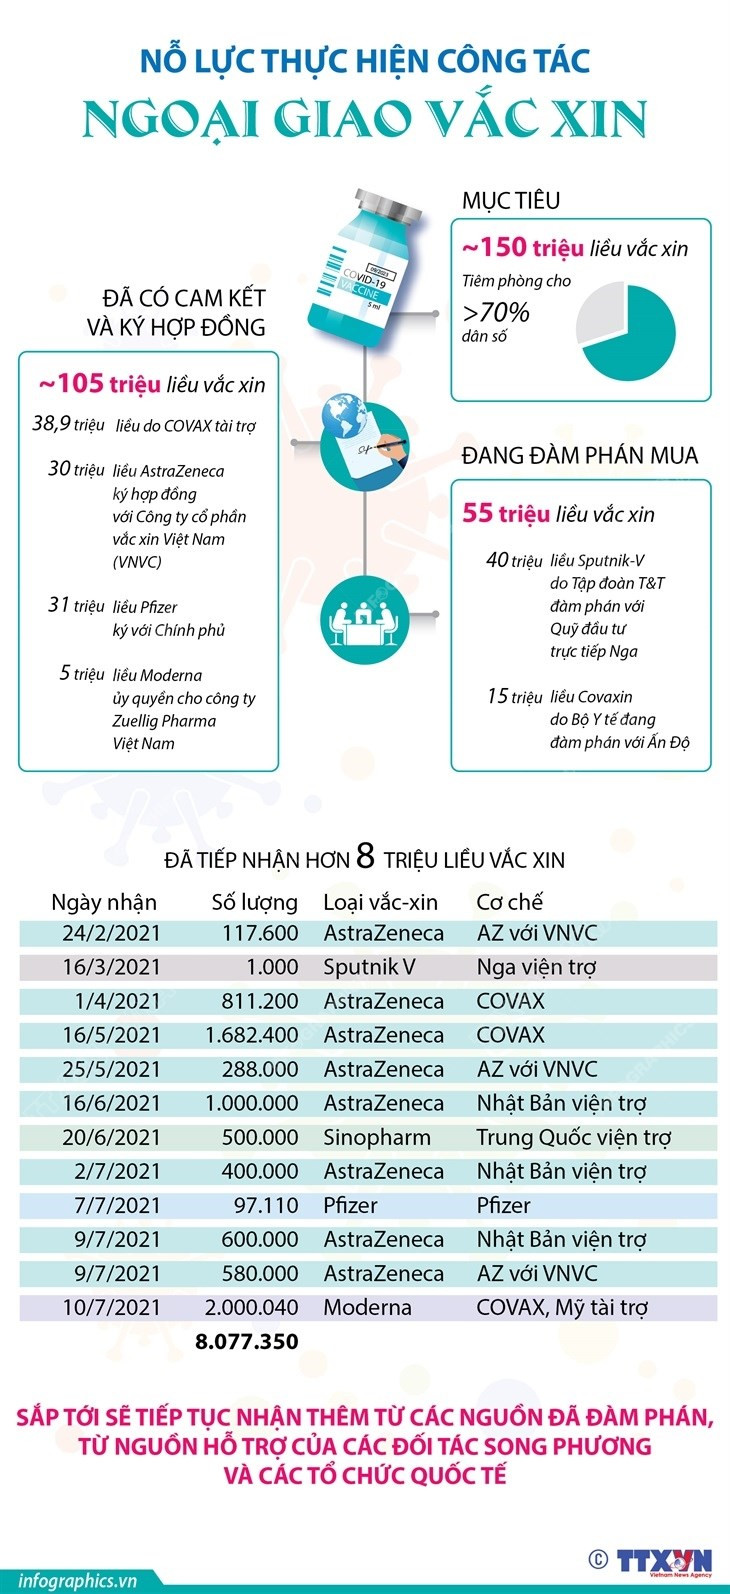 [Infographics] No luc thuc hien cong tac ngoai giao vaccine hinh anh 1